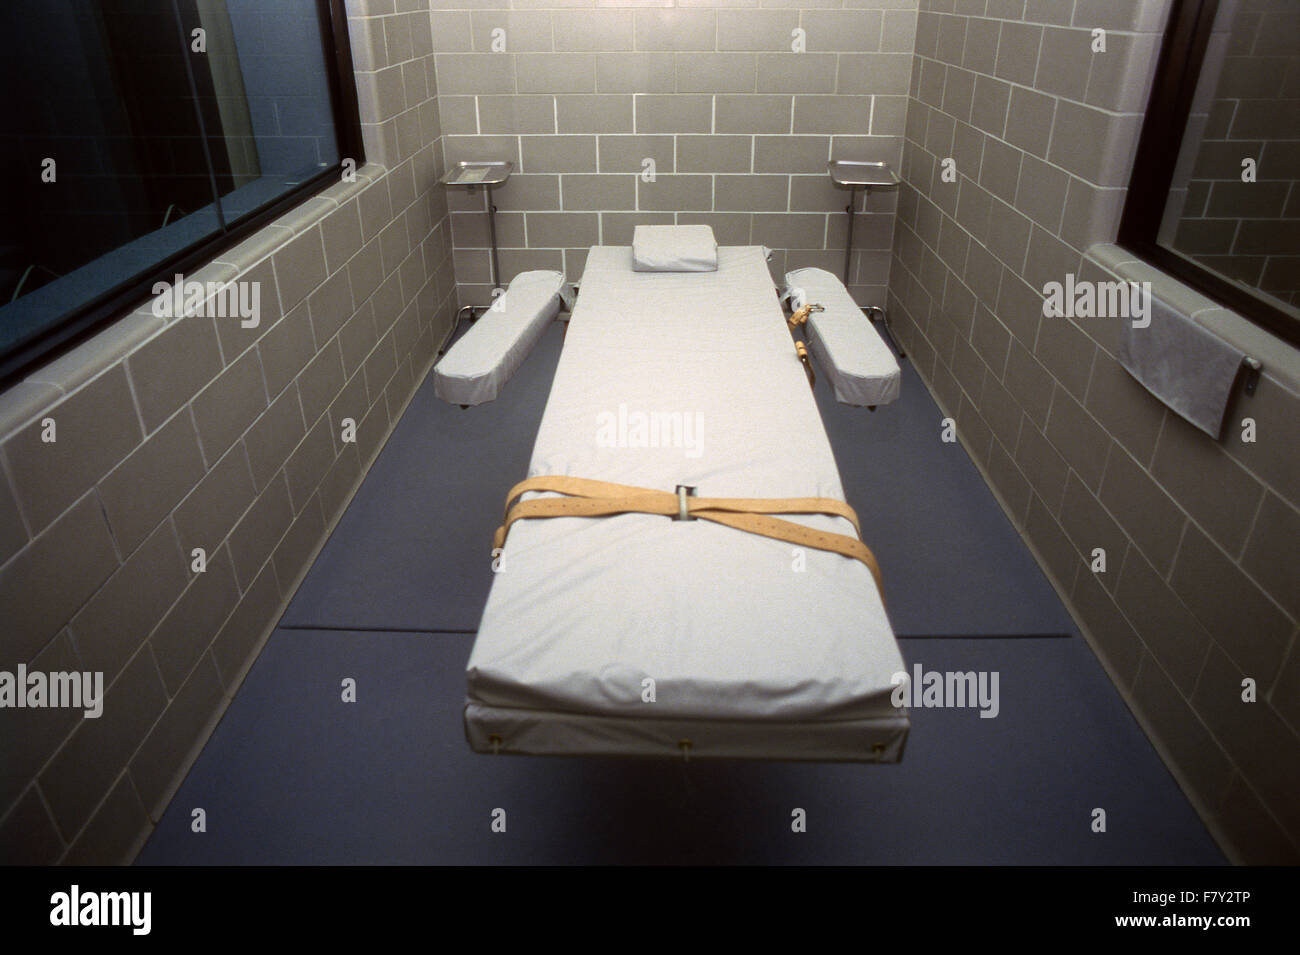 L'injection létale, la peine de mort, House, Arizona State Prison, Florence, Arizona, USA. Banque D'Images